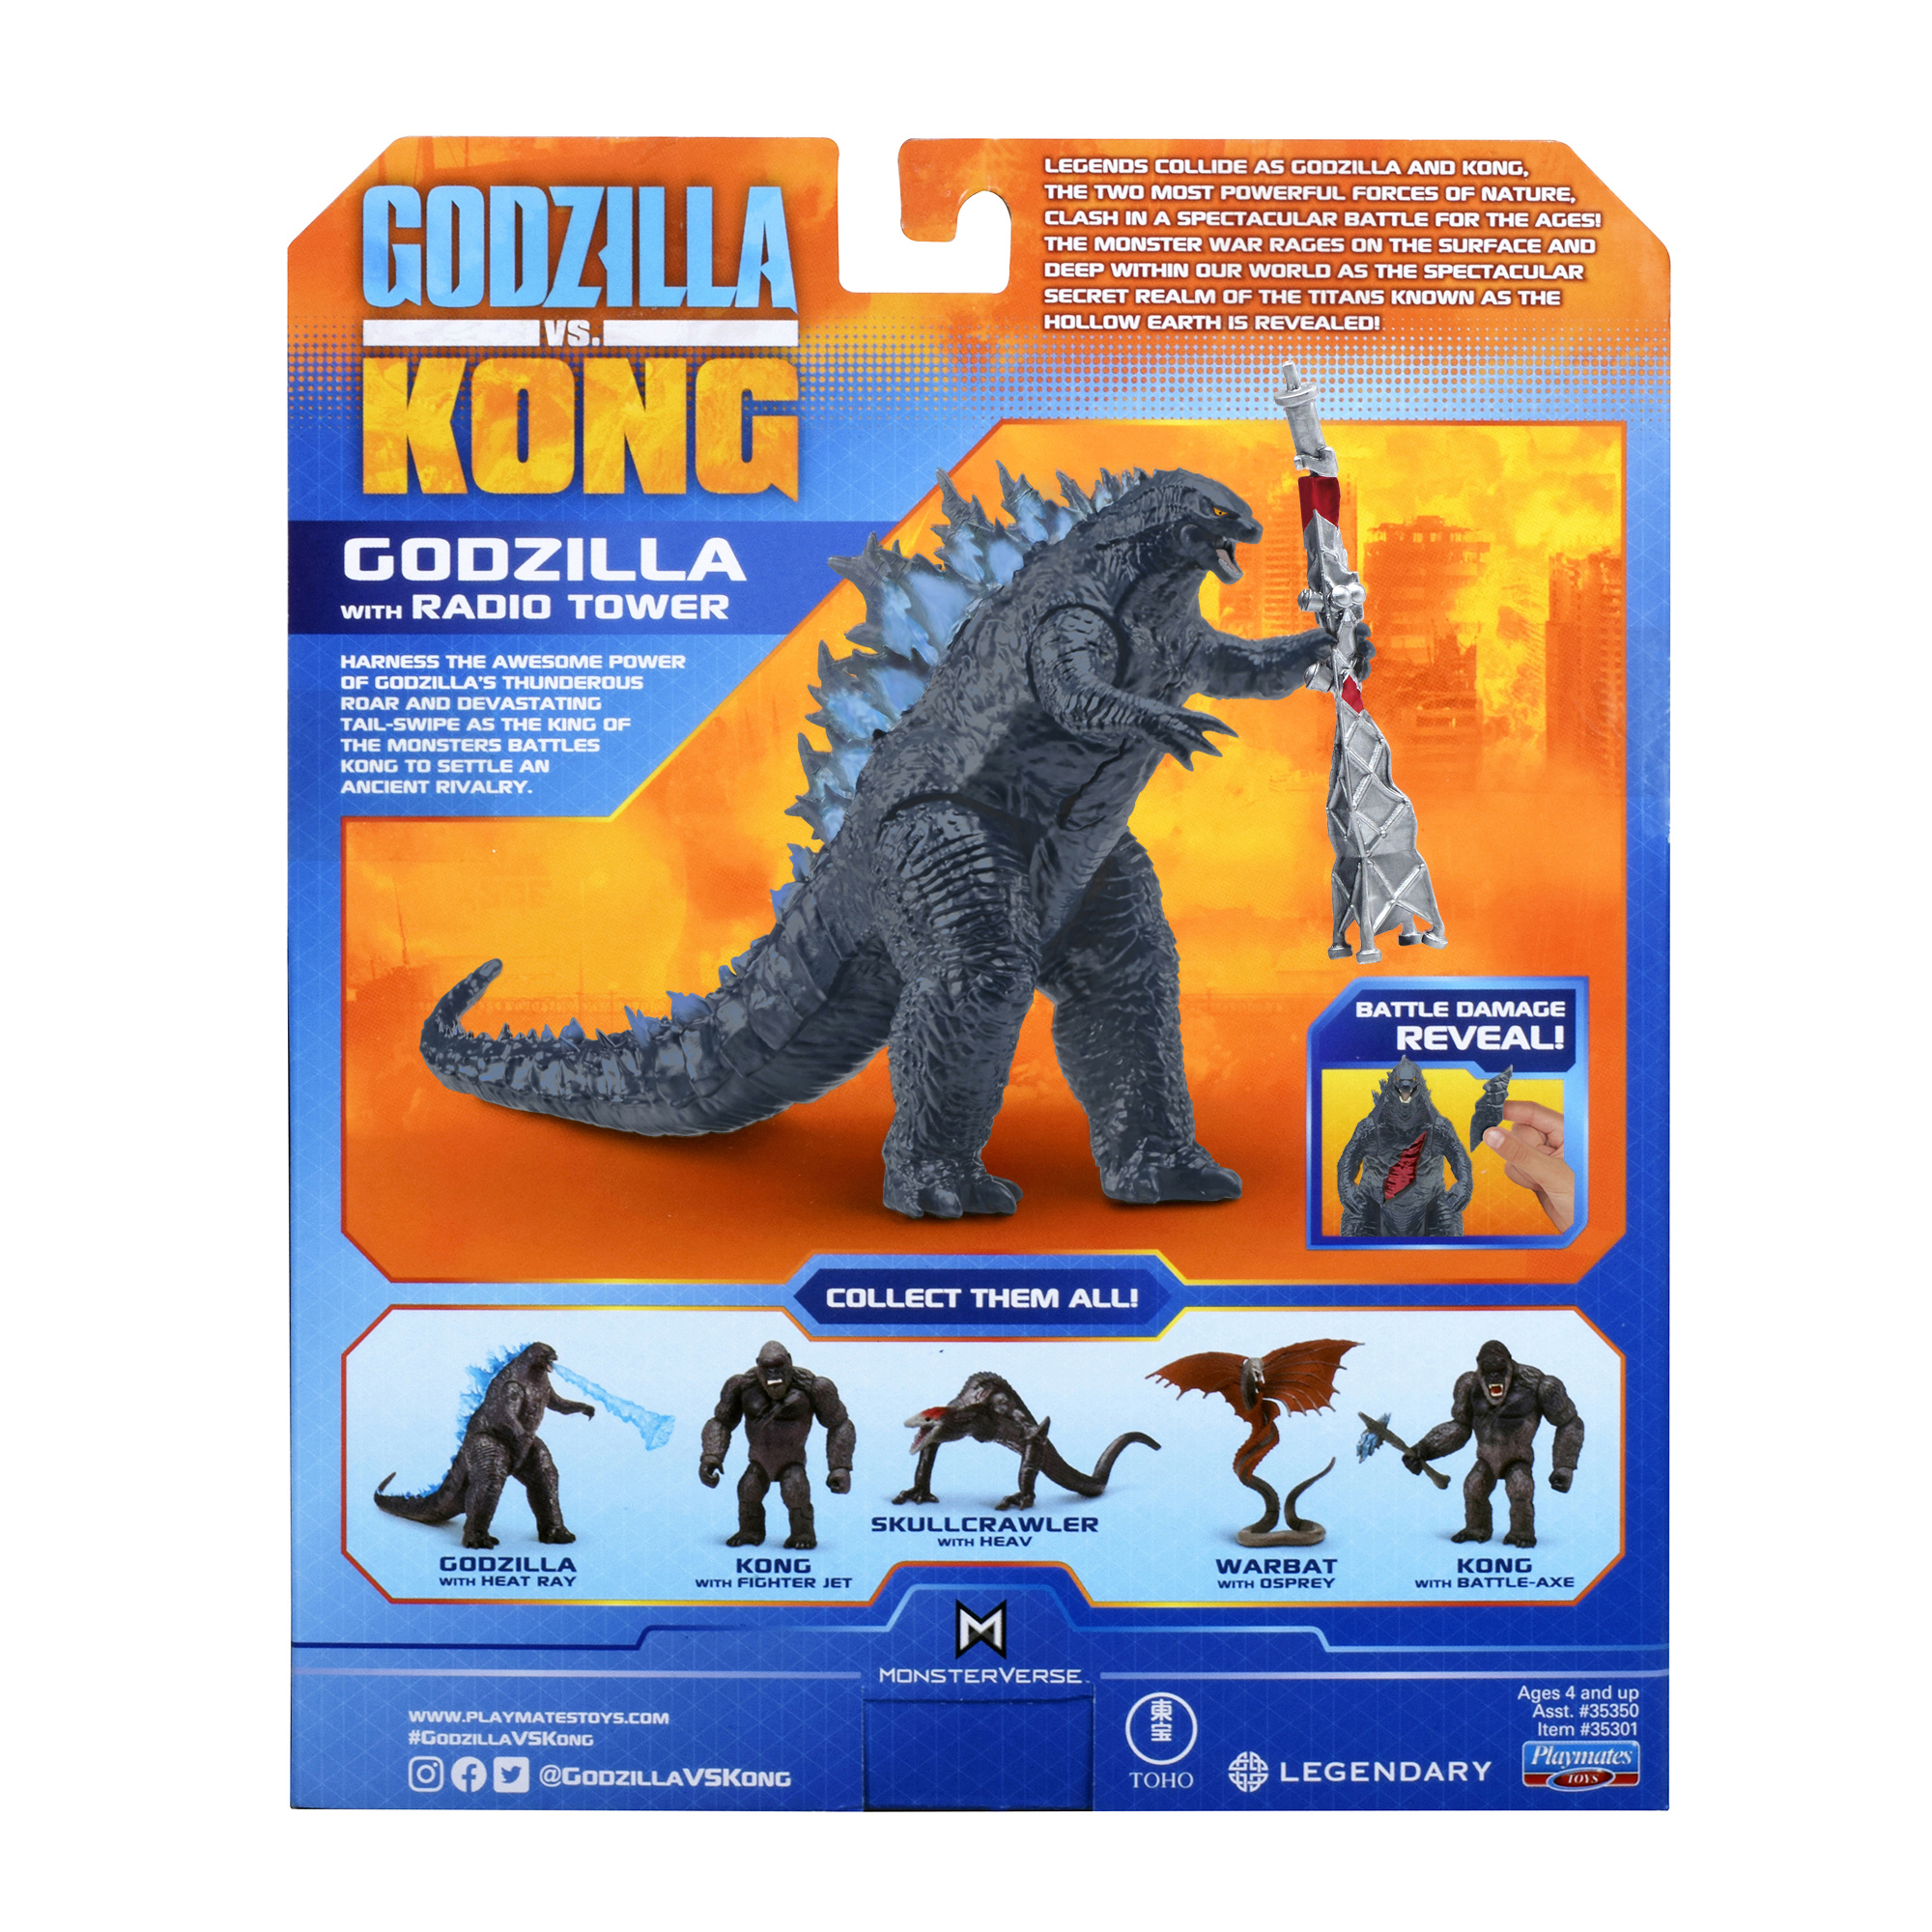 GODZILLA VS. KONG Licensed Product Guide | Godzilla - Toho | News